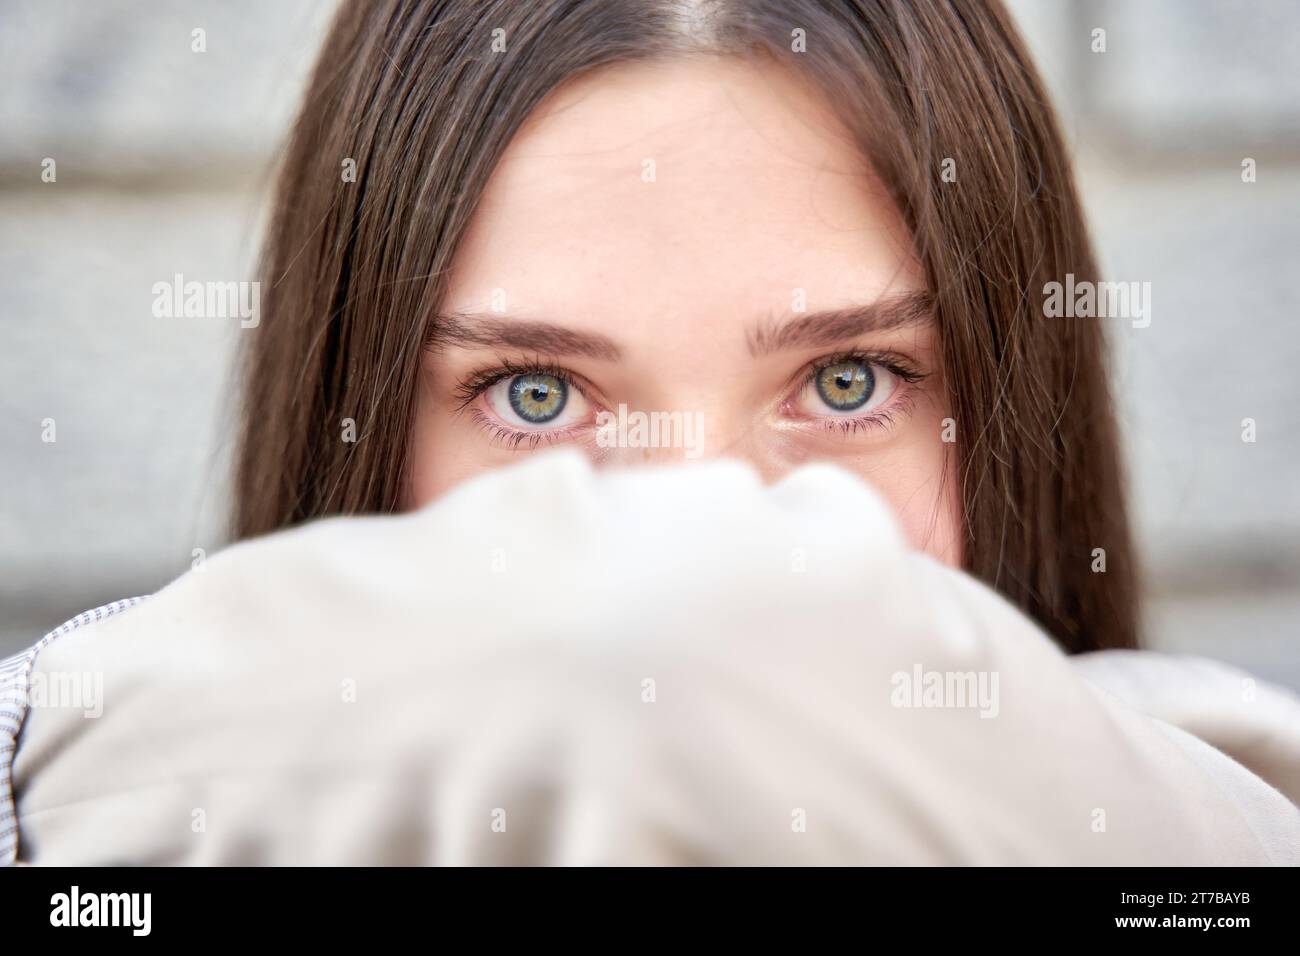 Retrato en primer plano de una mujer con hermosos ojos azules Foto Stock